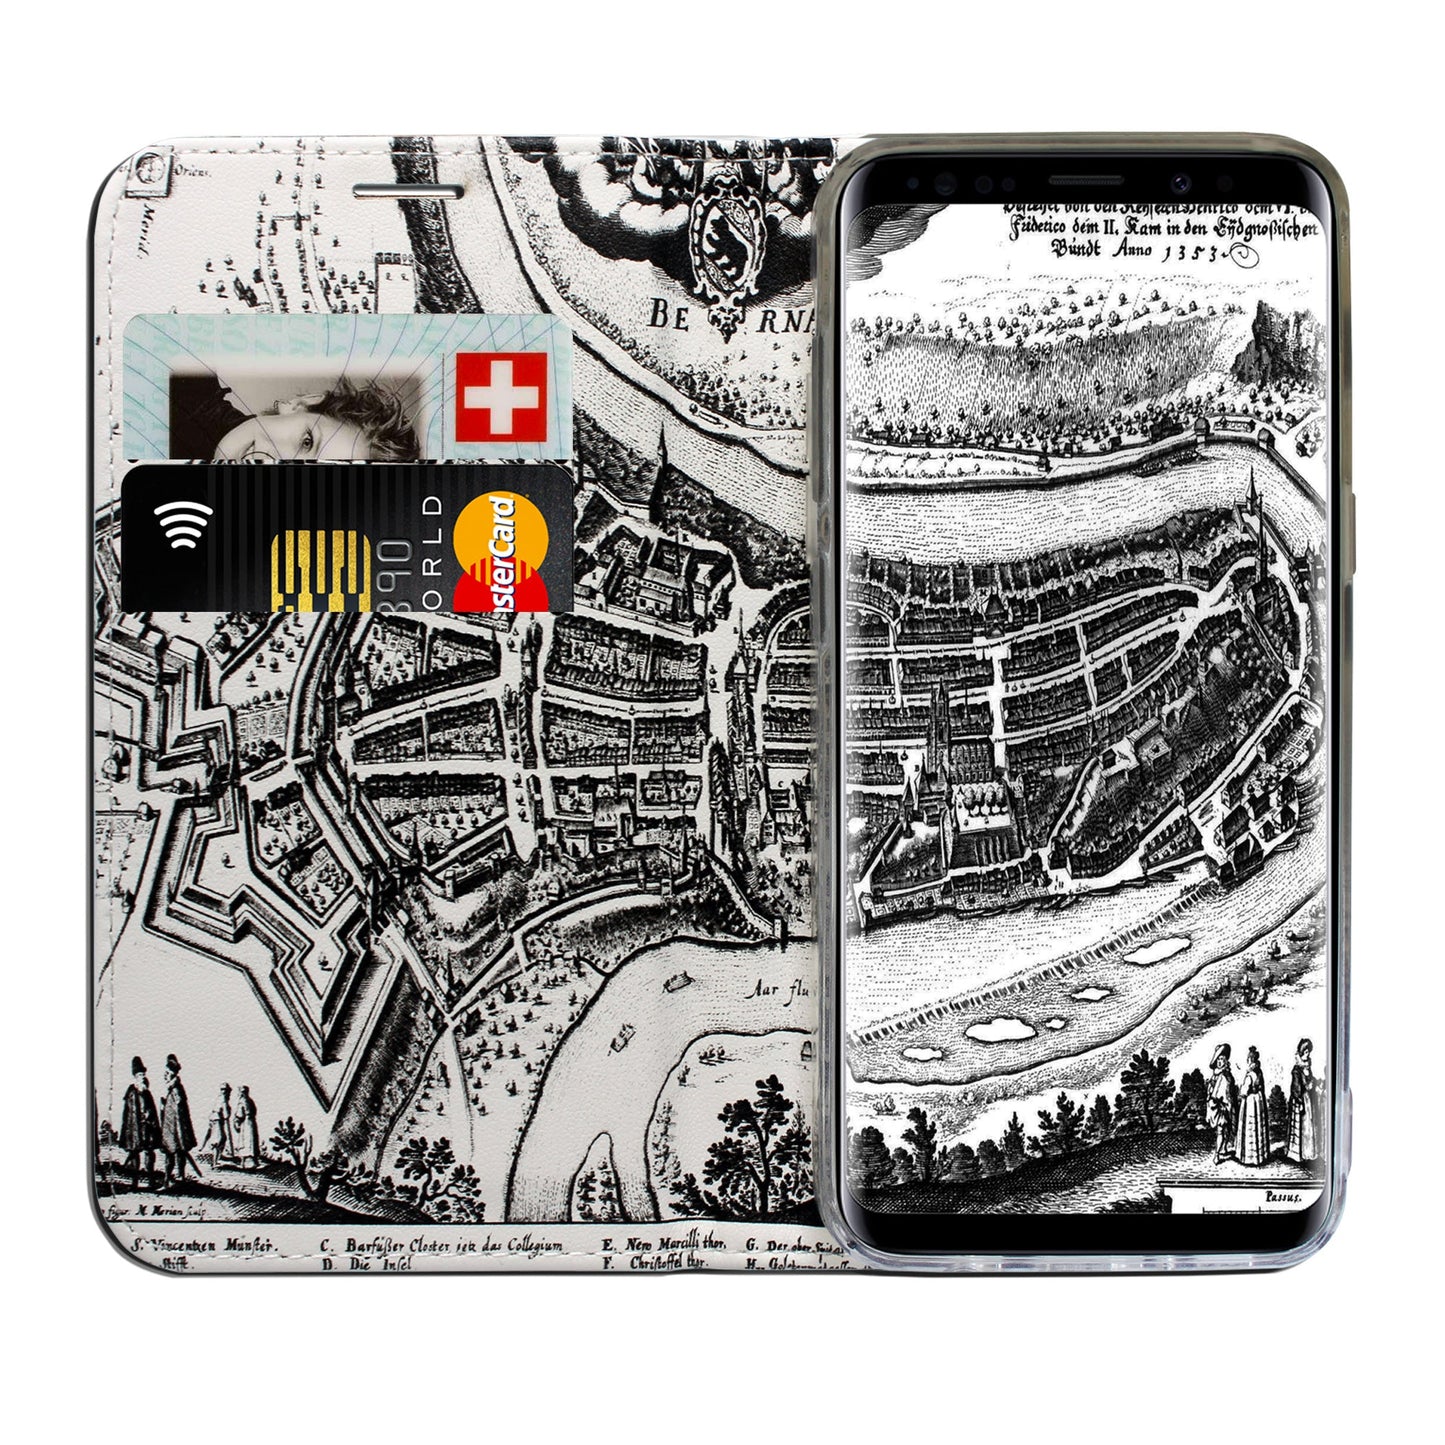 Bern City Panorama Case für Samsung Galaxy S9